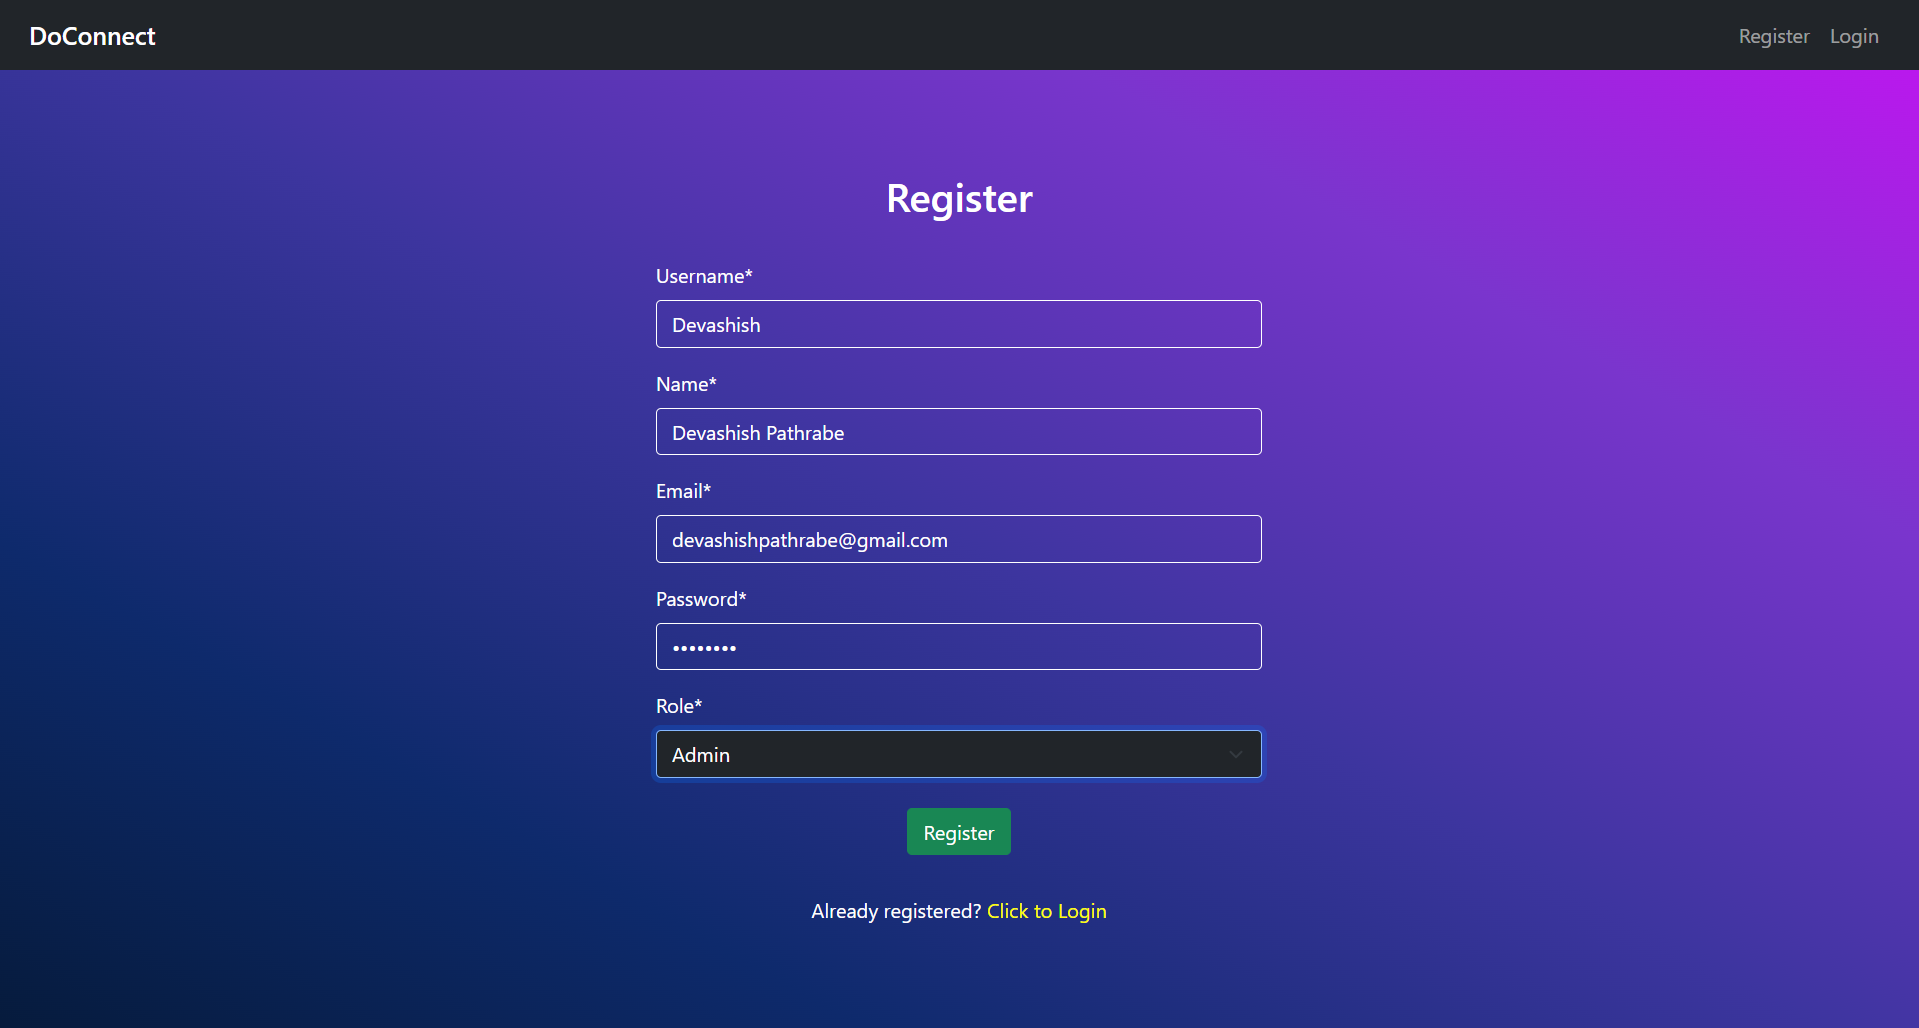 Registration as Admin